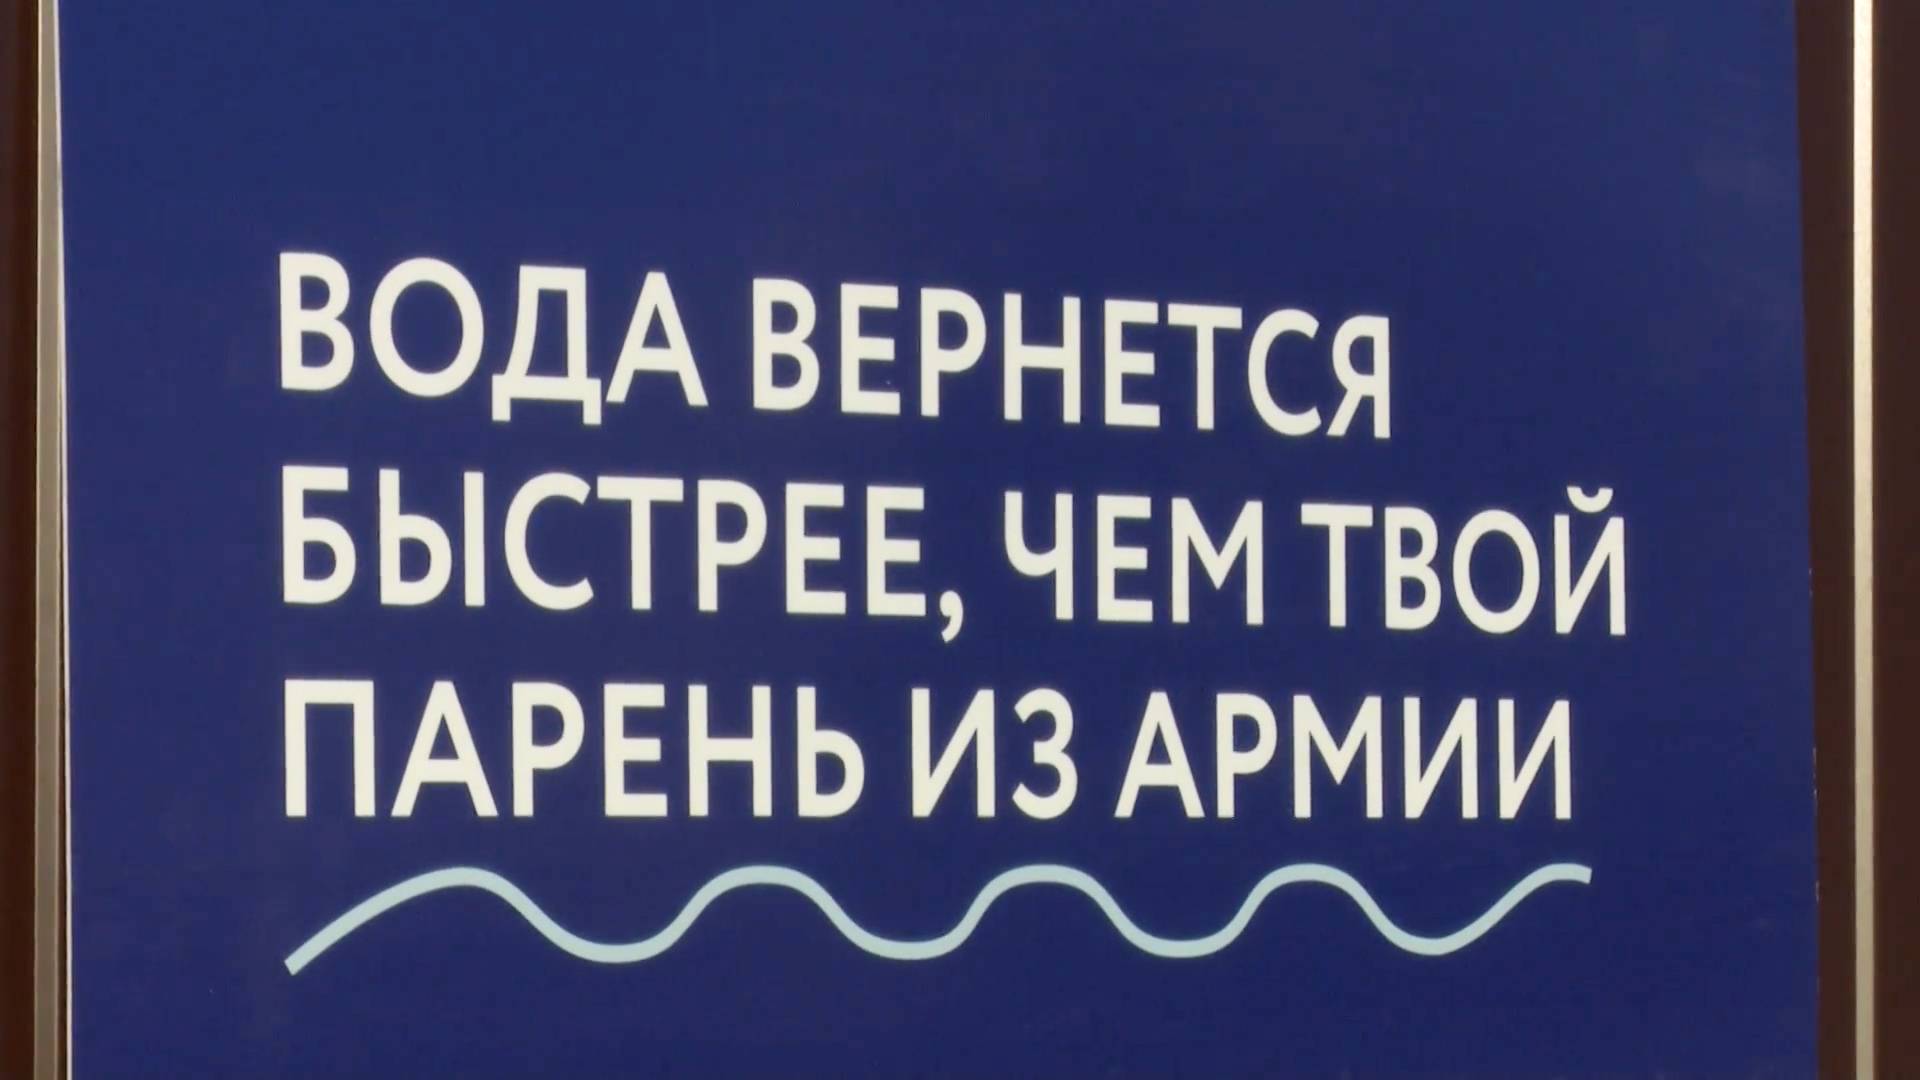 Жители Казани оценили креативные плакаты МУП «Водоканал» на заборах Видео